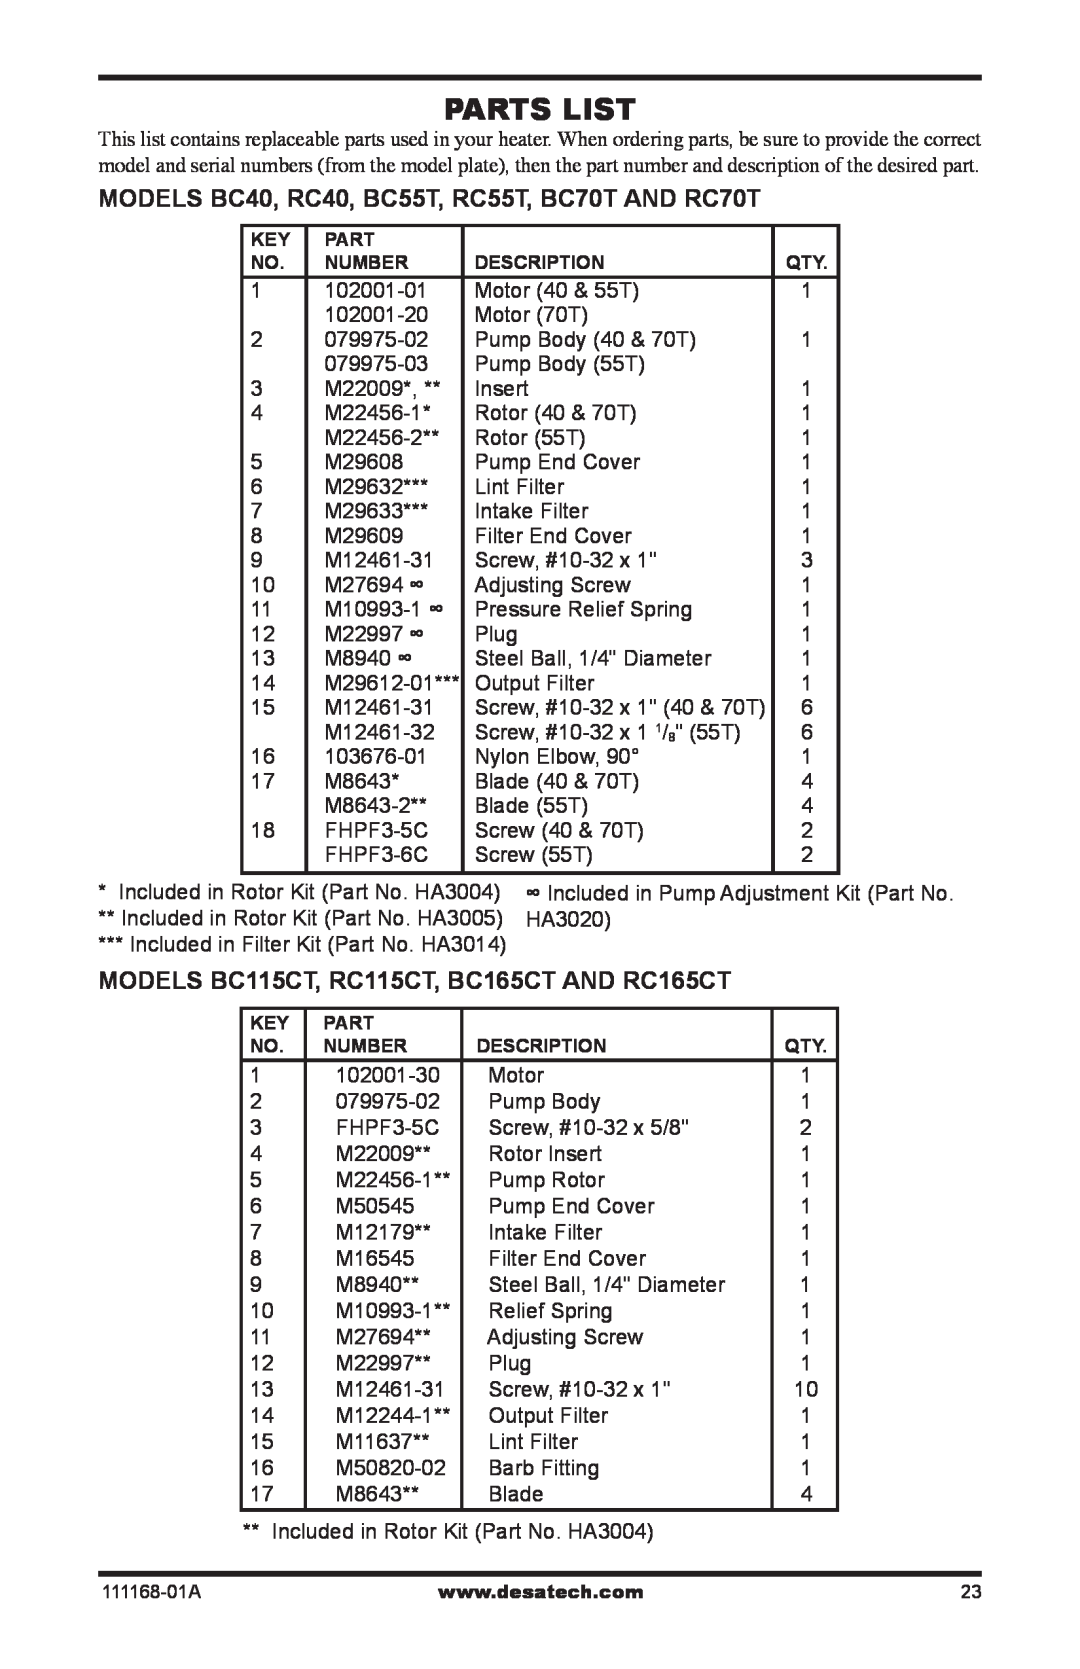 Desa Parts List, MODELS BC40, RC40, BC55T, RC55T, BC70T AND RC70T, MODELS BC115CT, RC115CT, BC165CT AND RC165CT 